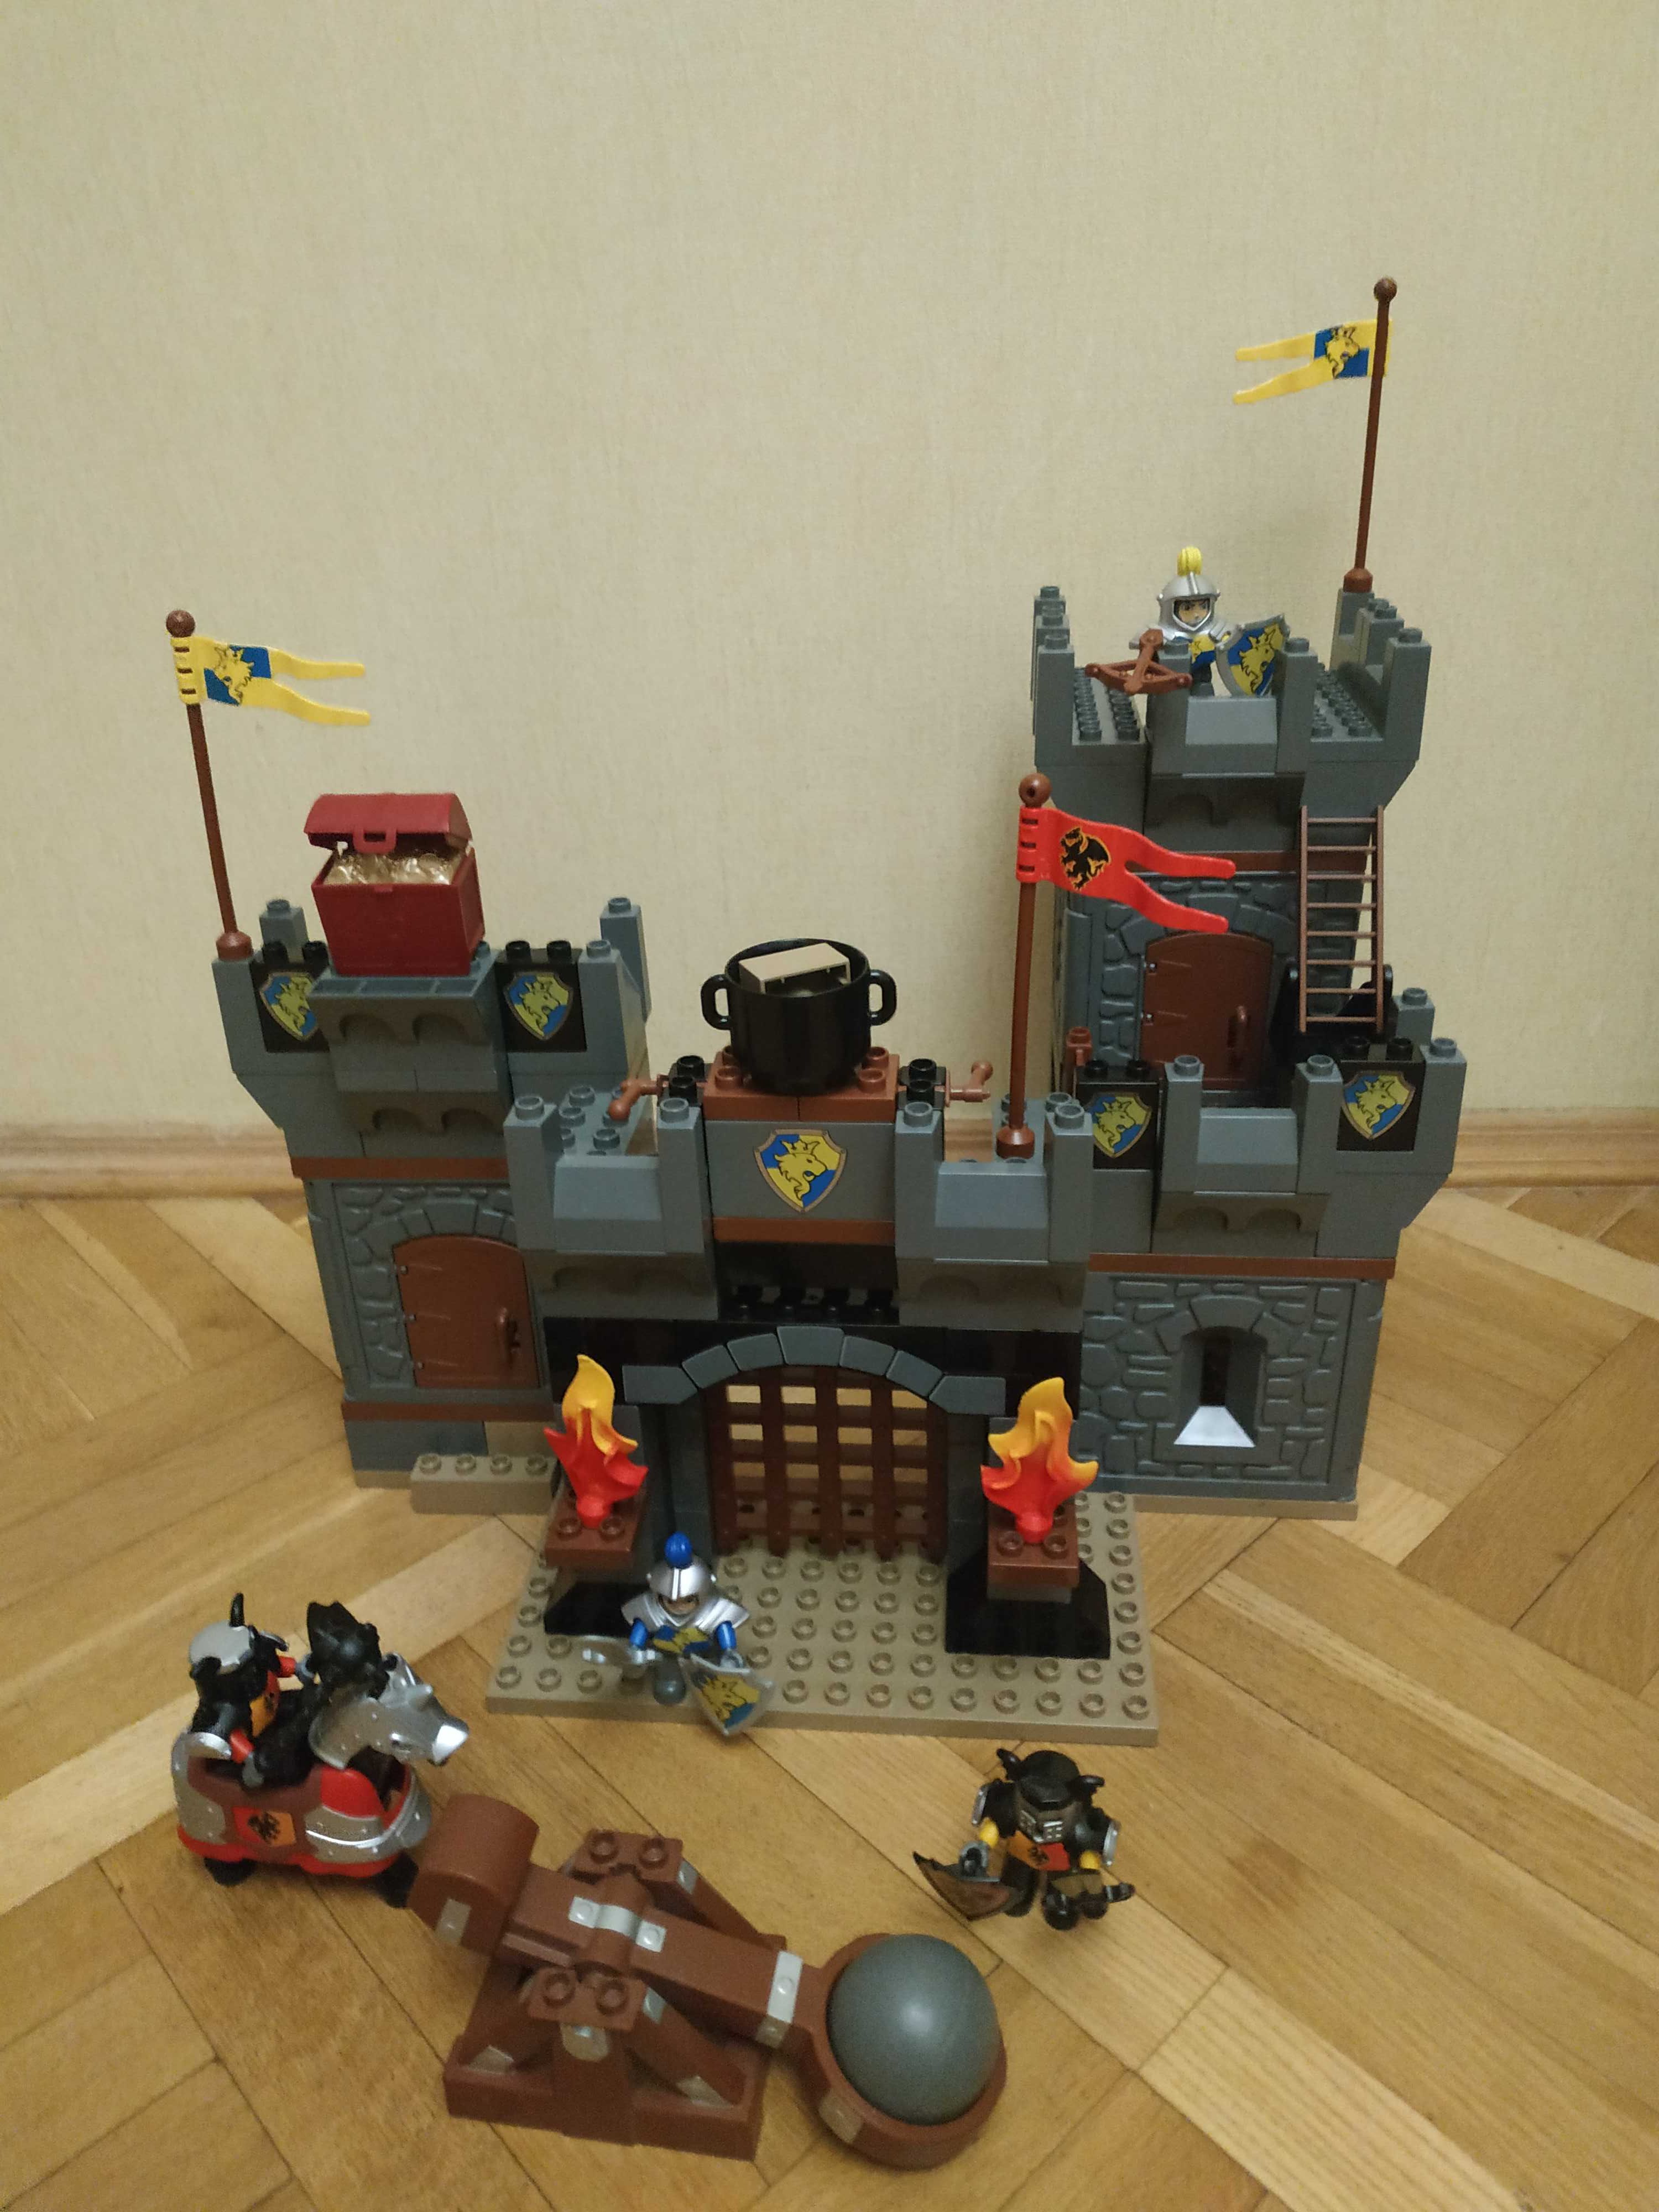 Конструктор Lego Duplo Рыцарский замок, 4777